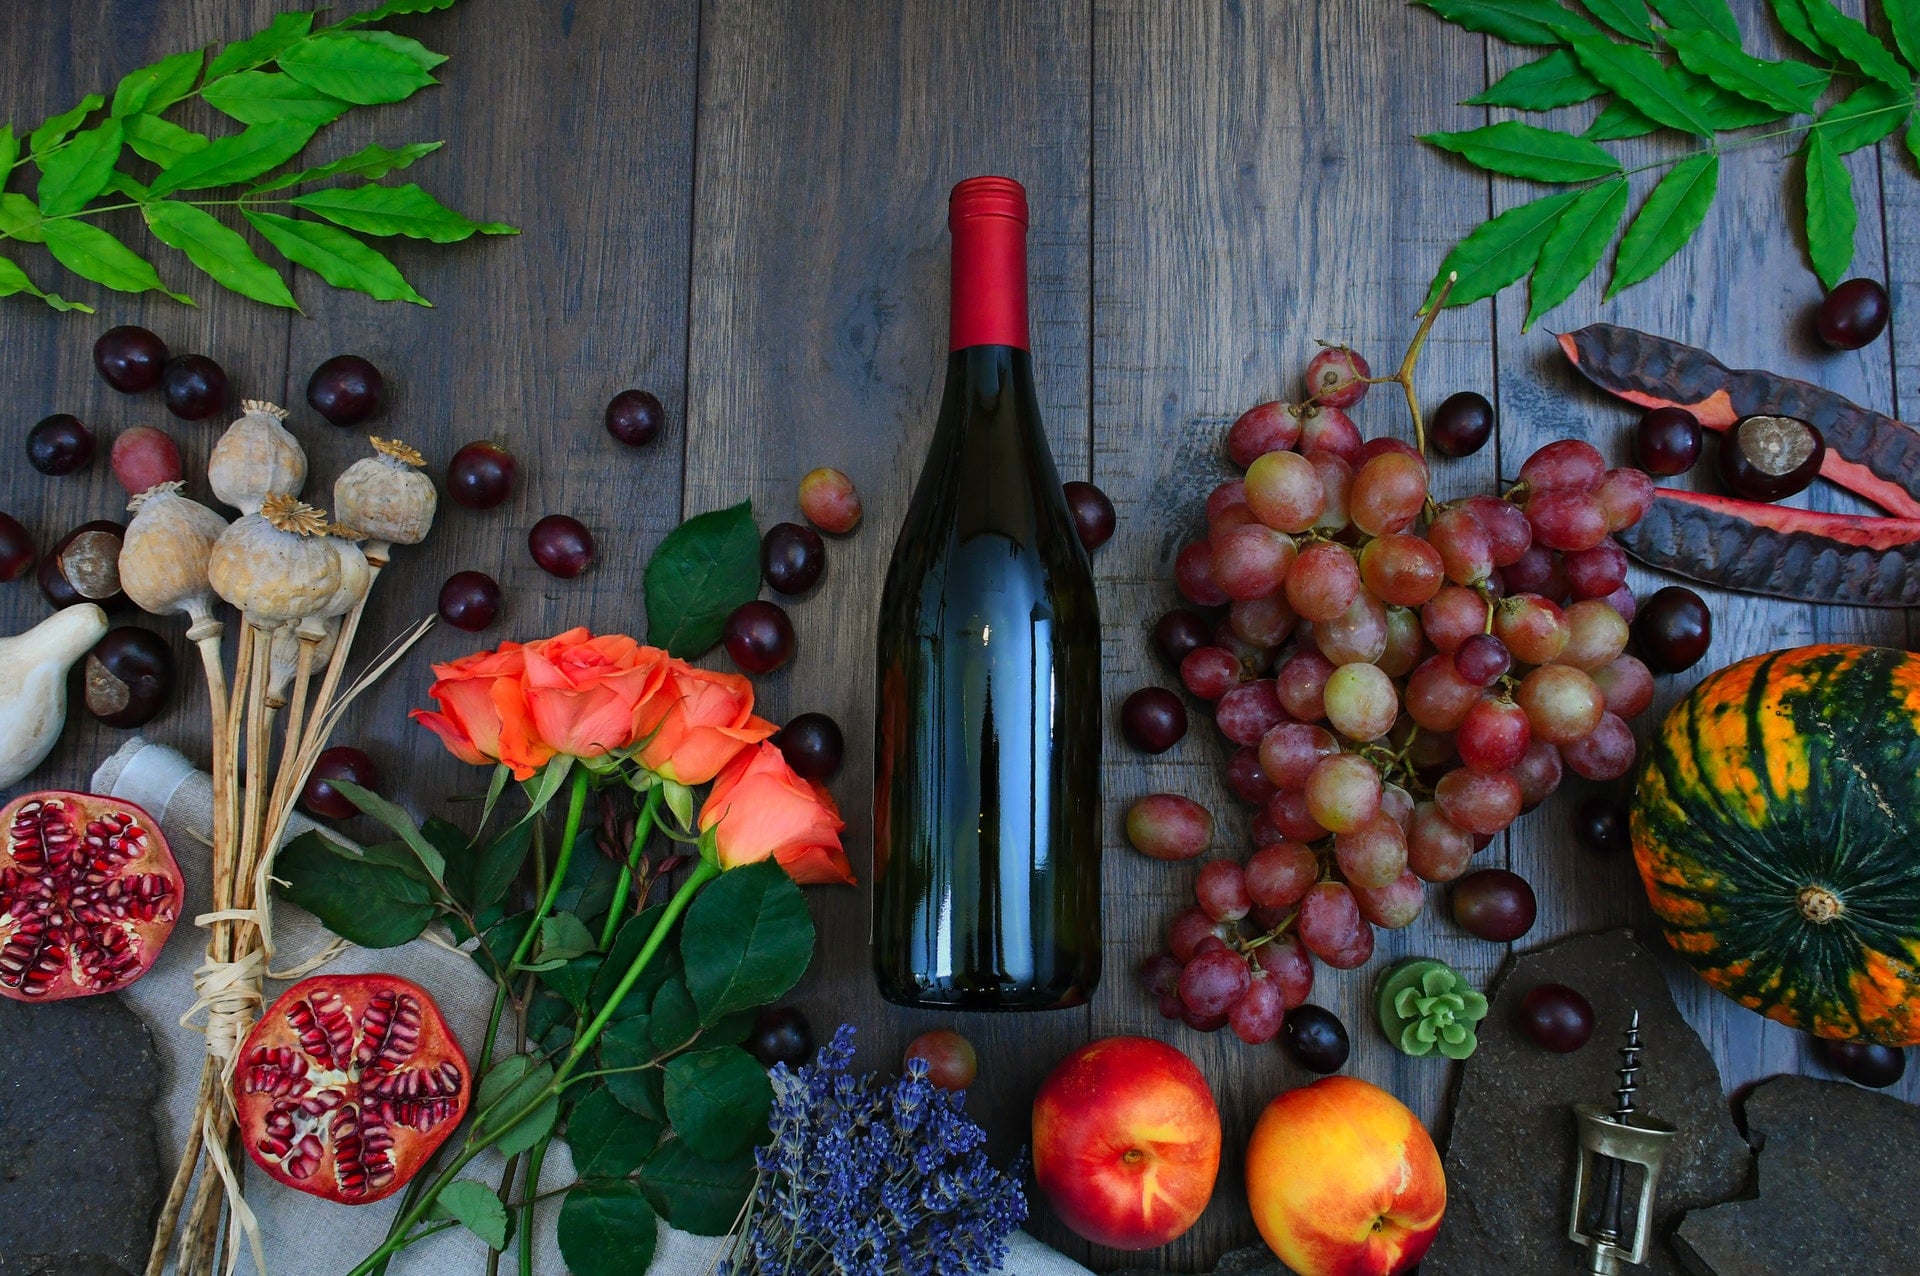 美味營養學：讓身體更健康的 13 種食物組合 apples berries wine bottle beside grapes roses fruits brown wooden